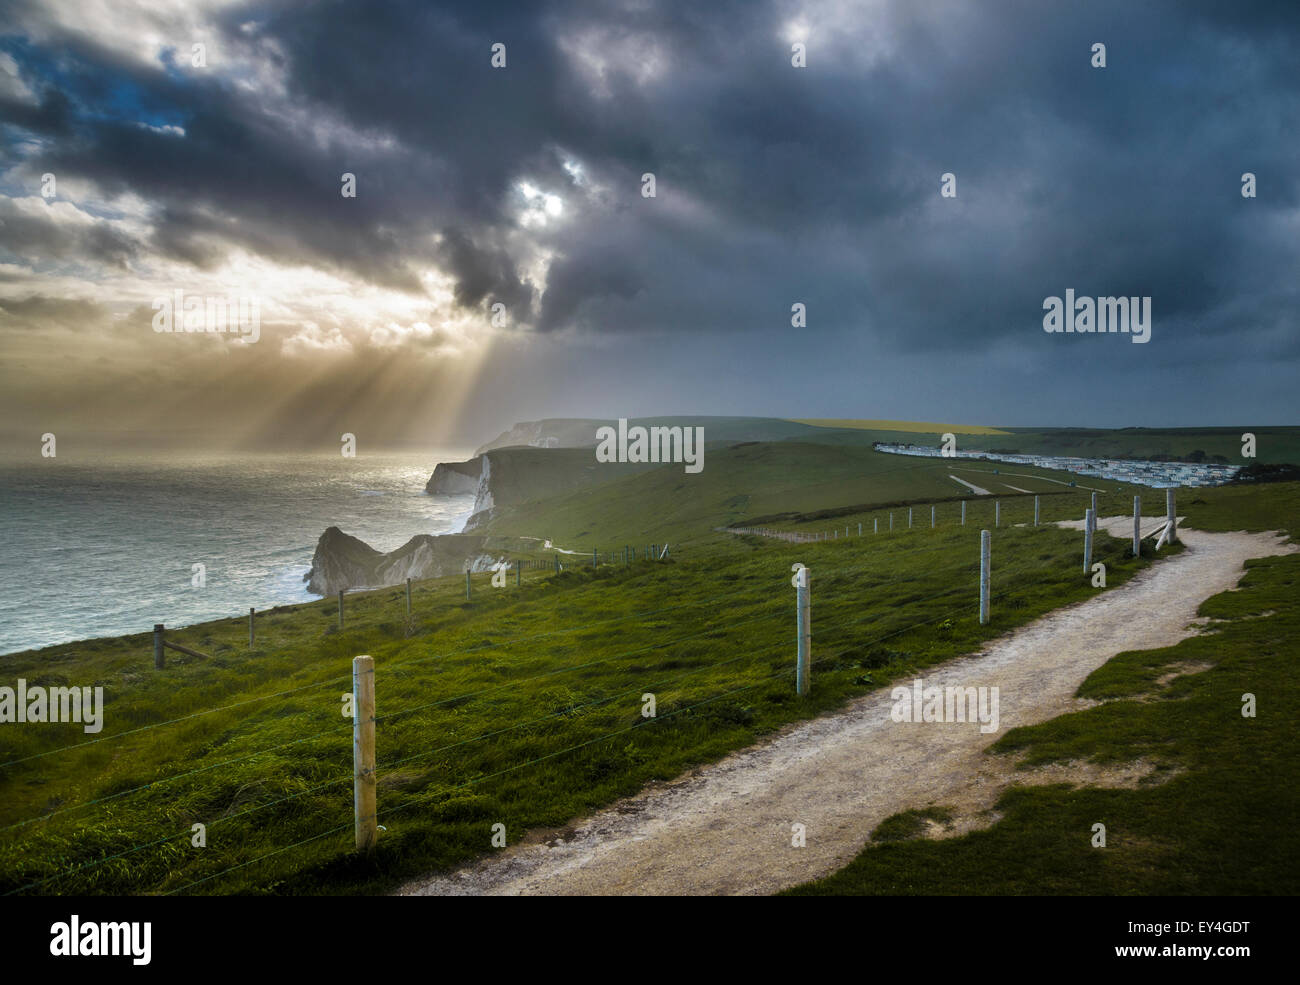 Les rayons du soleil se reflète à travers les nuages et illumine la côte jurassique, Dorset, Lulworth, au sud de l'Angleterre, Angleterre, Royaume-Uni Banque D'Images